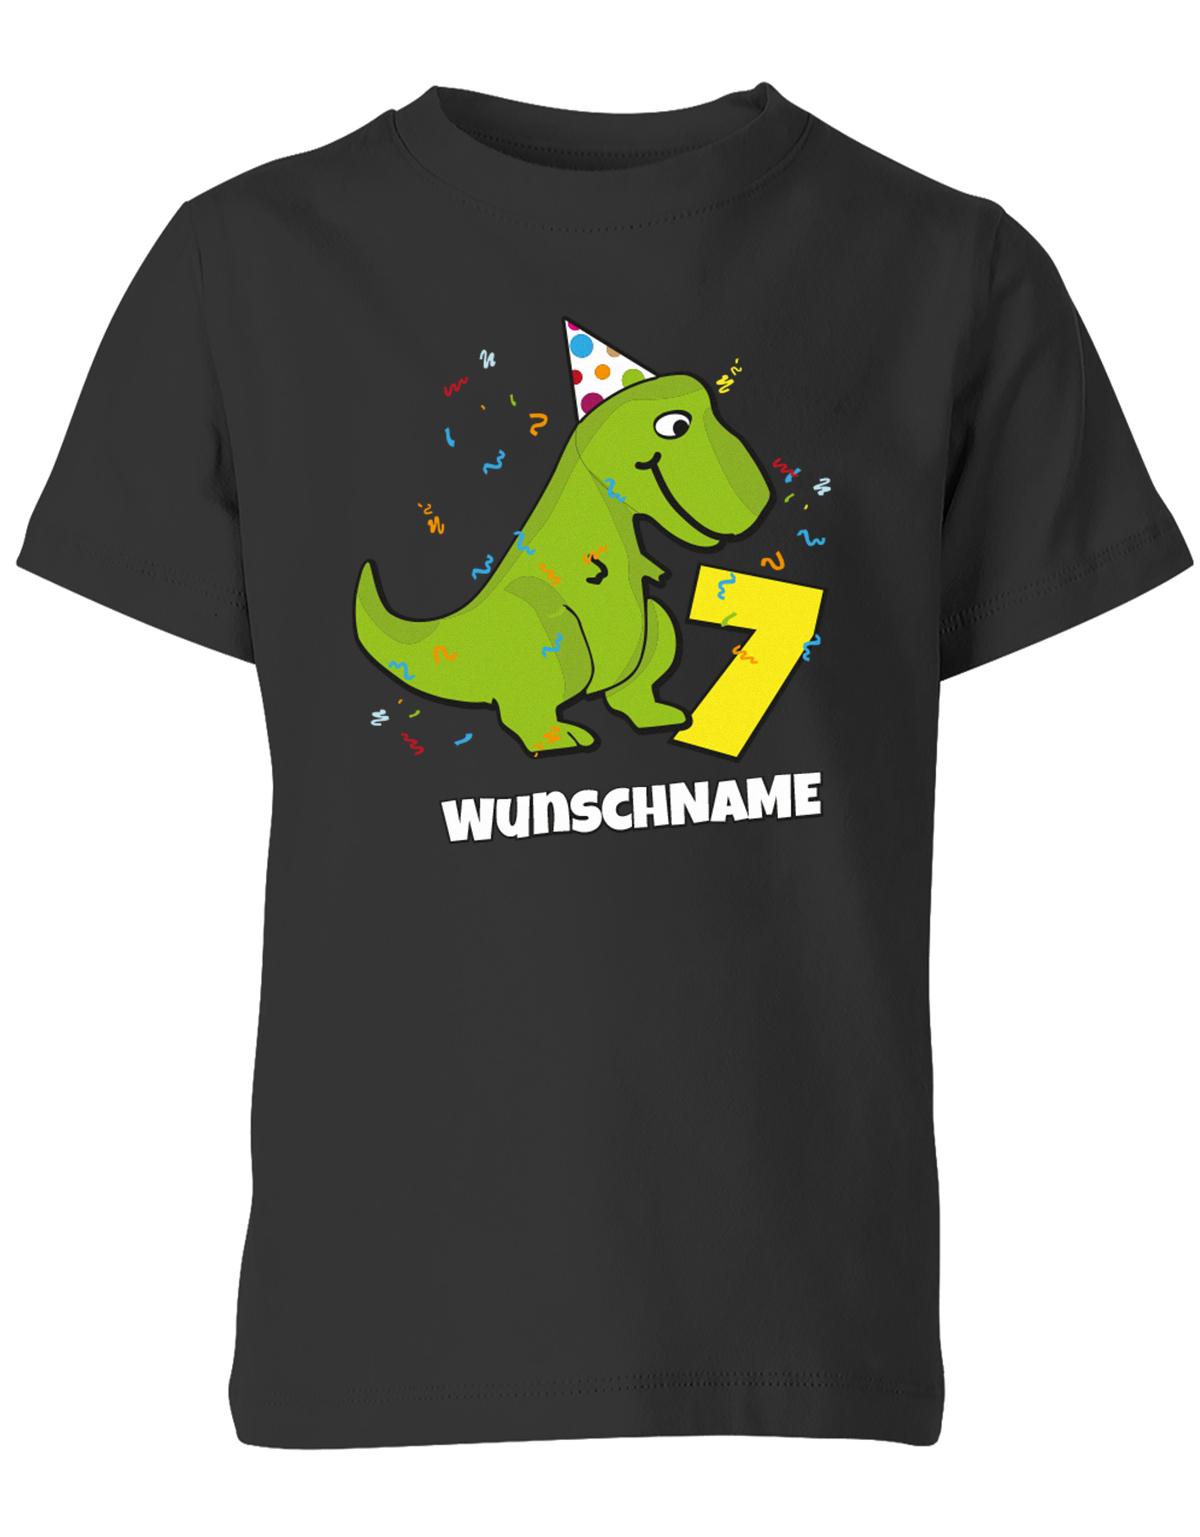 ich-bin-7-Dinosaurier-t-rex-wunschname-geburtstag-kinder-shirt-schwarz